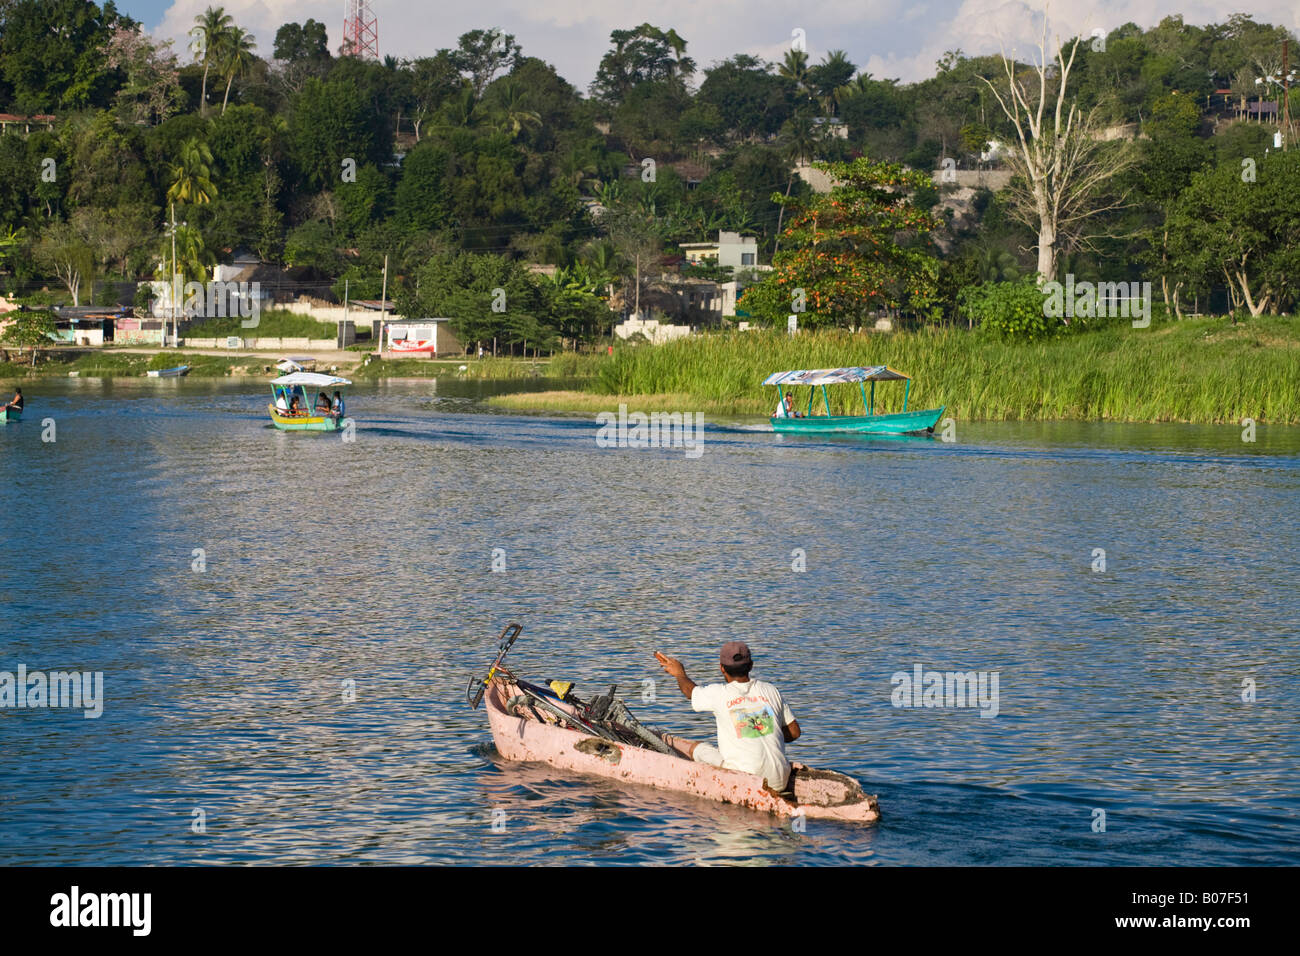 Guatemala, El Peten, Flores, Lago de Peten Itza, Man in dug-out canoe with bike Stock Photo